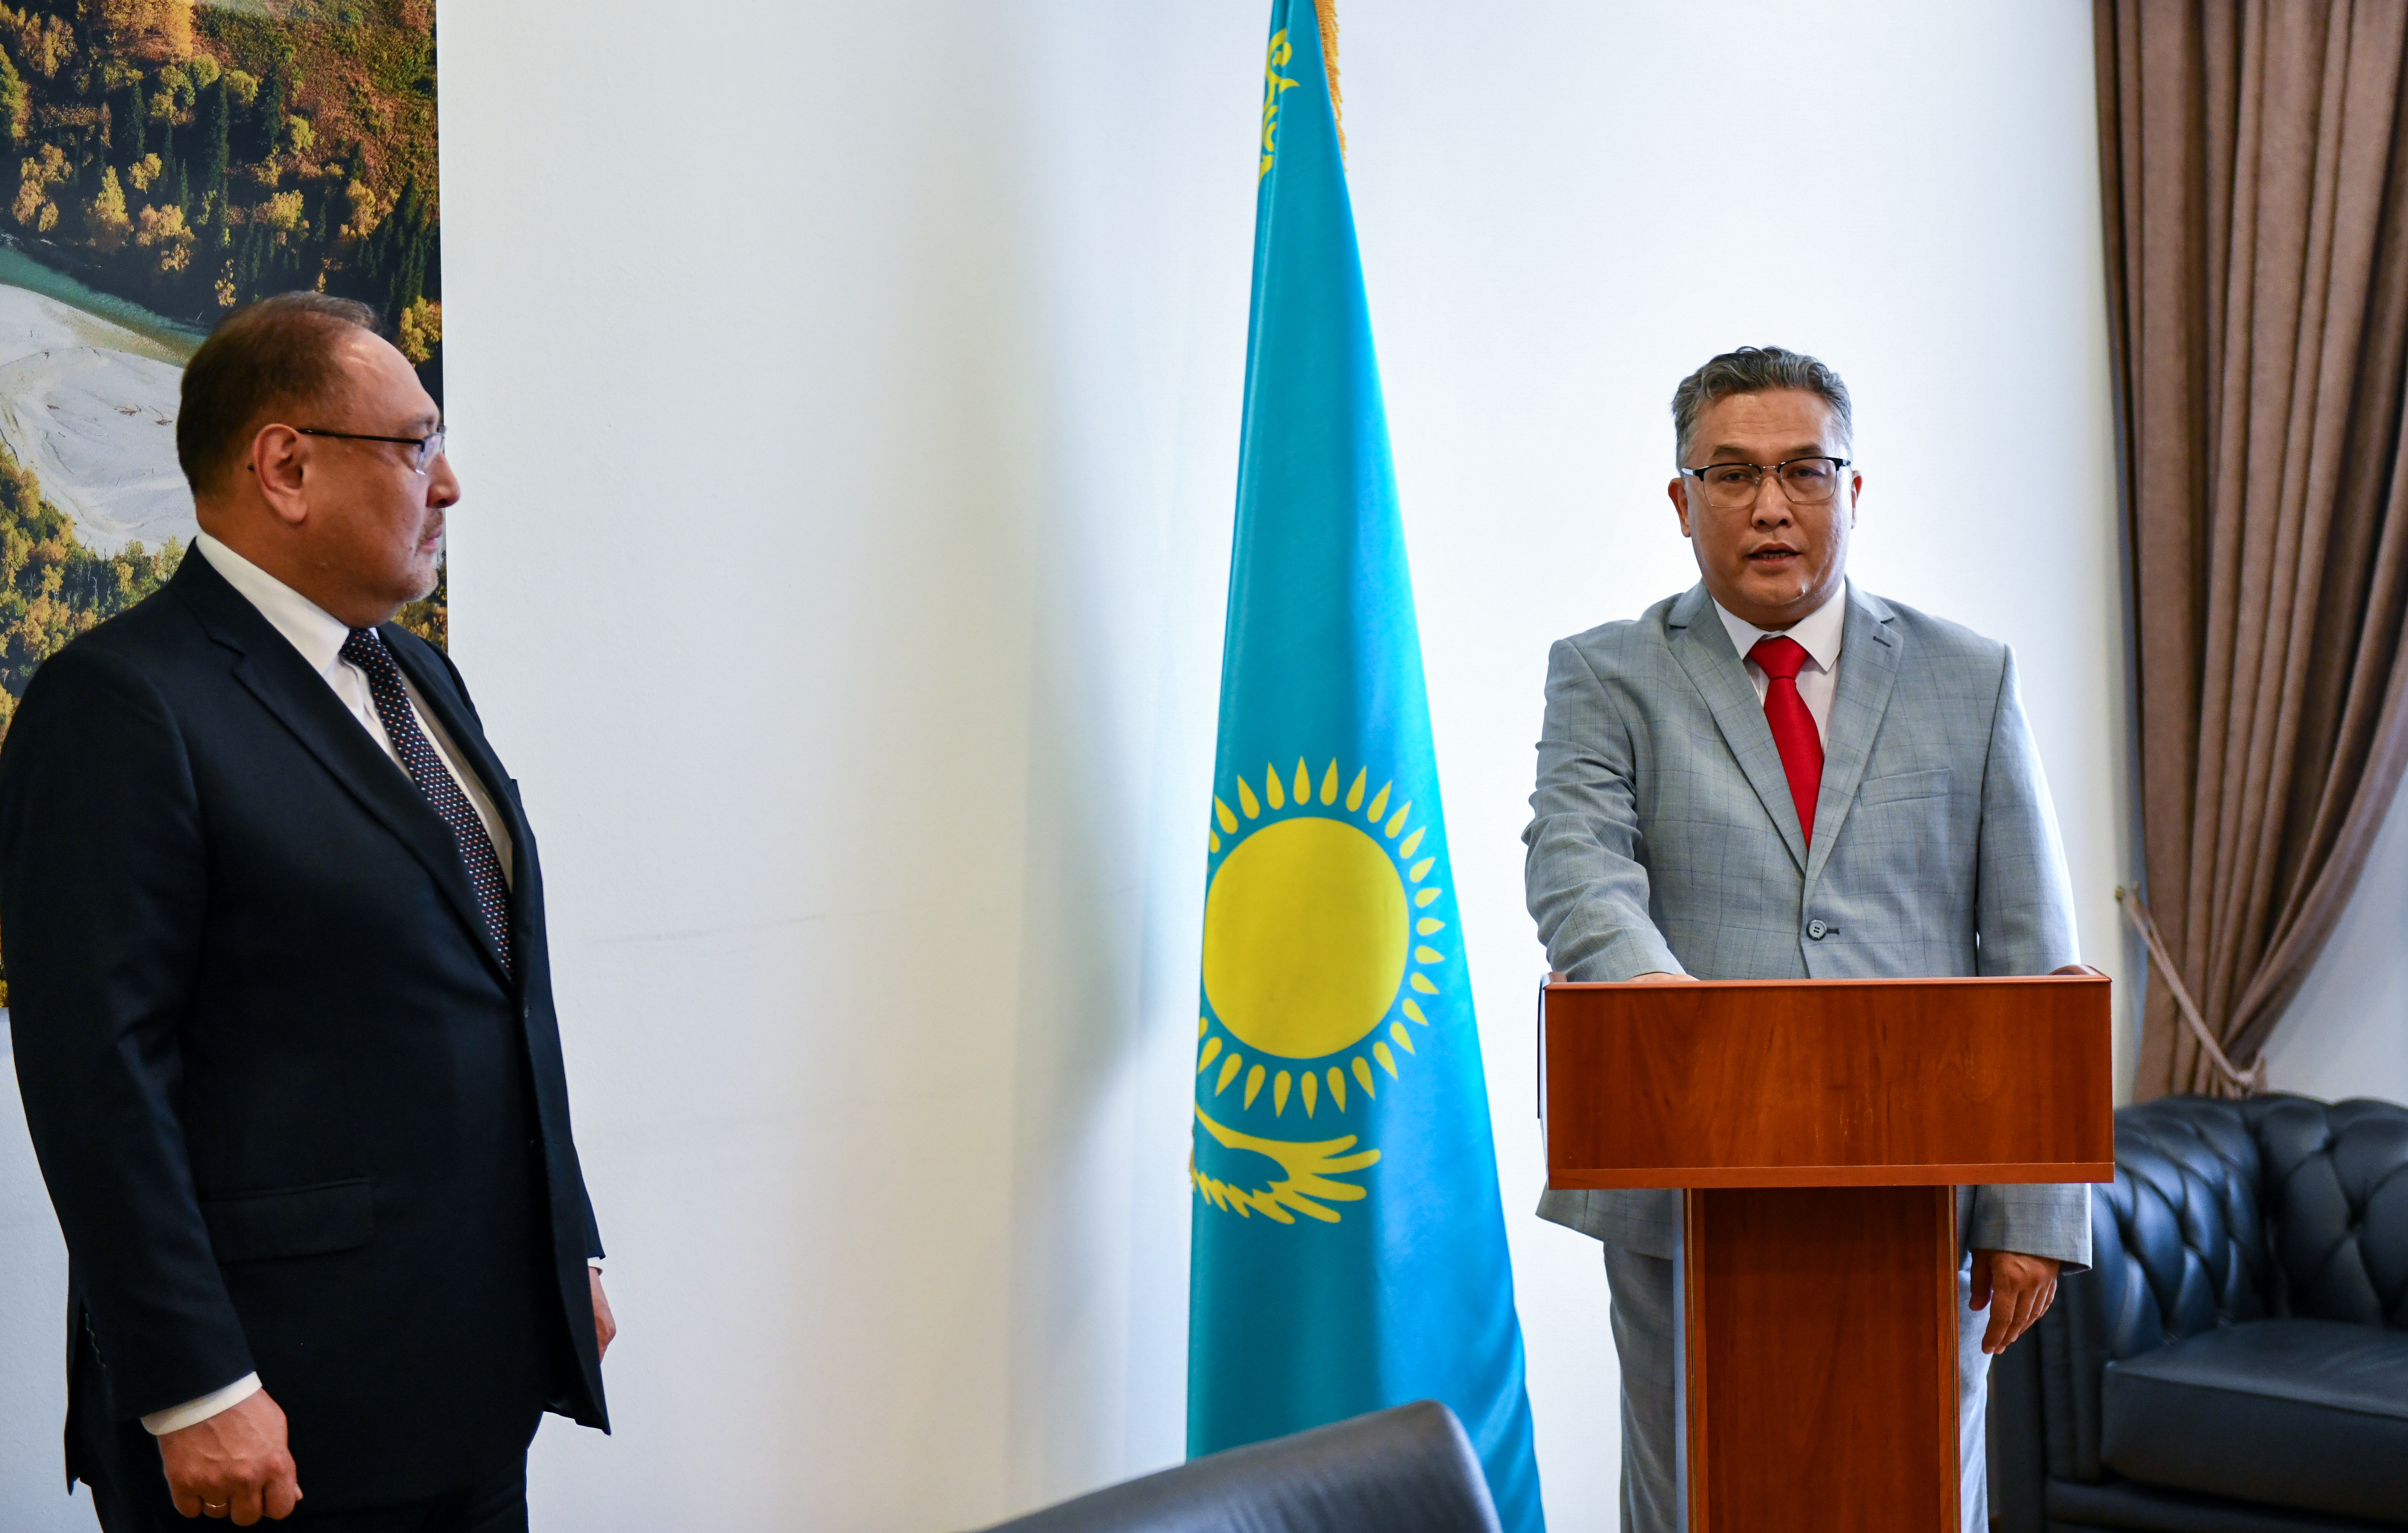 Вновь назначенный Посол Казахстана принес присягу